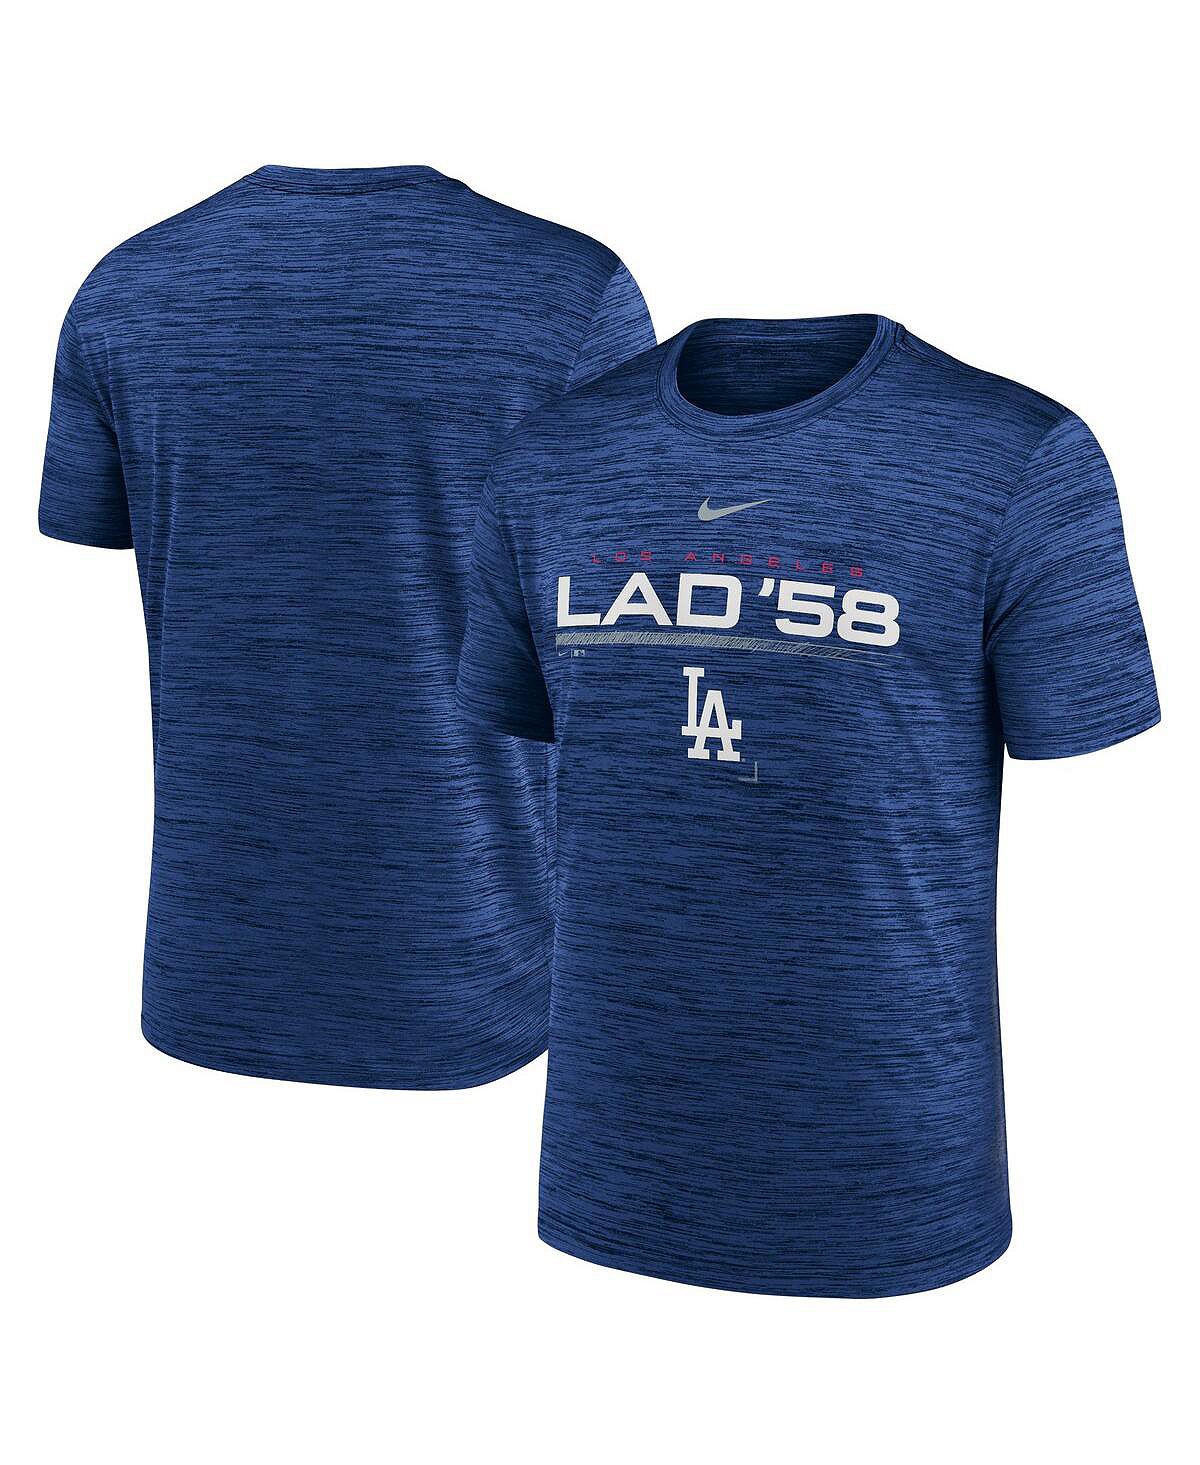 Мужская футболка Royal Los Angeles Dodgers с надписью Velocity Performance Nike